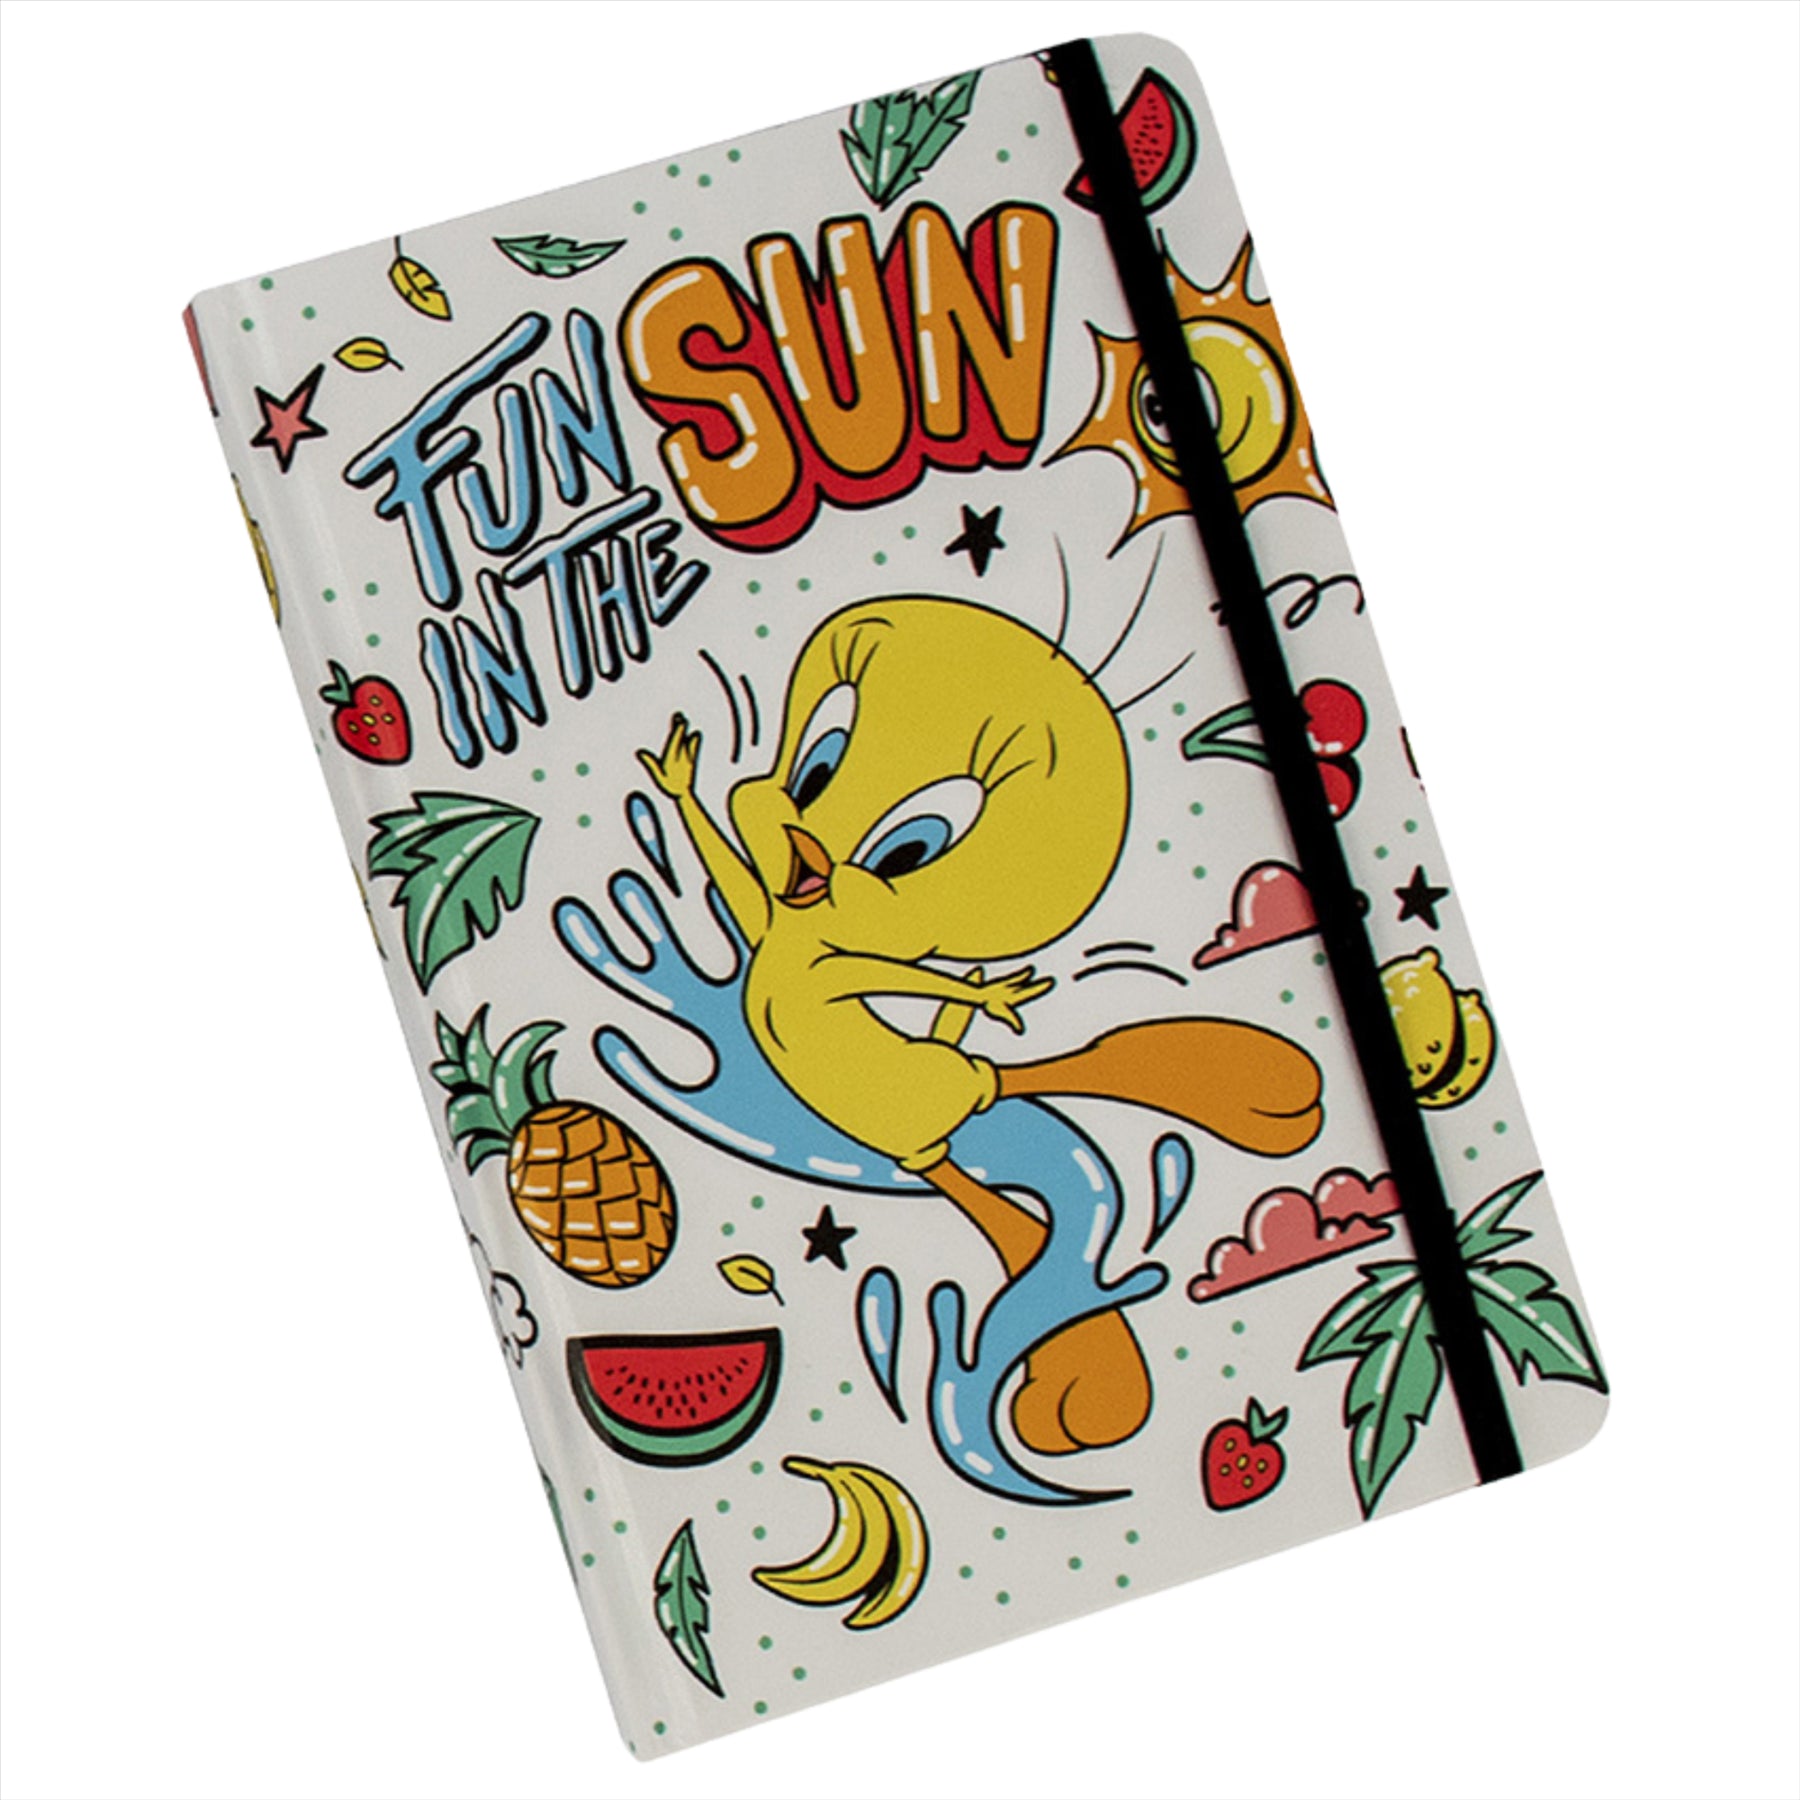 Looney Tunes Tweety Bird Notebook A5 Journal